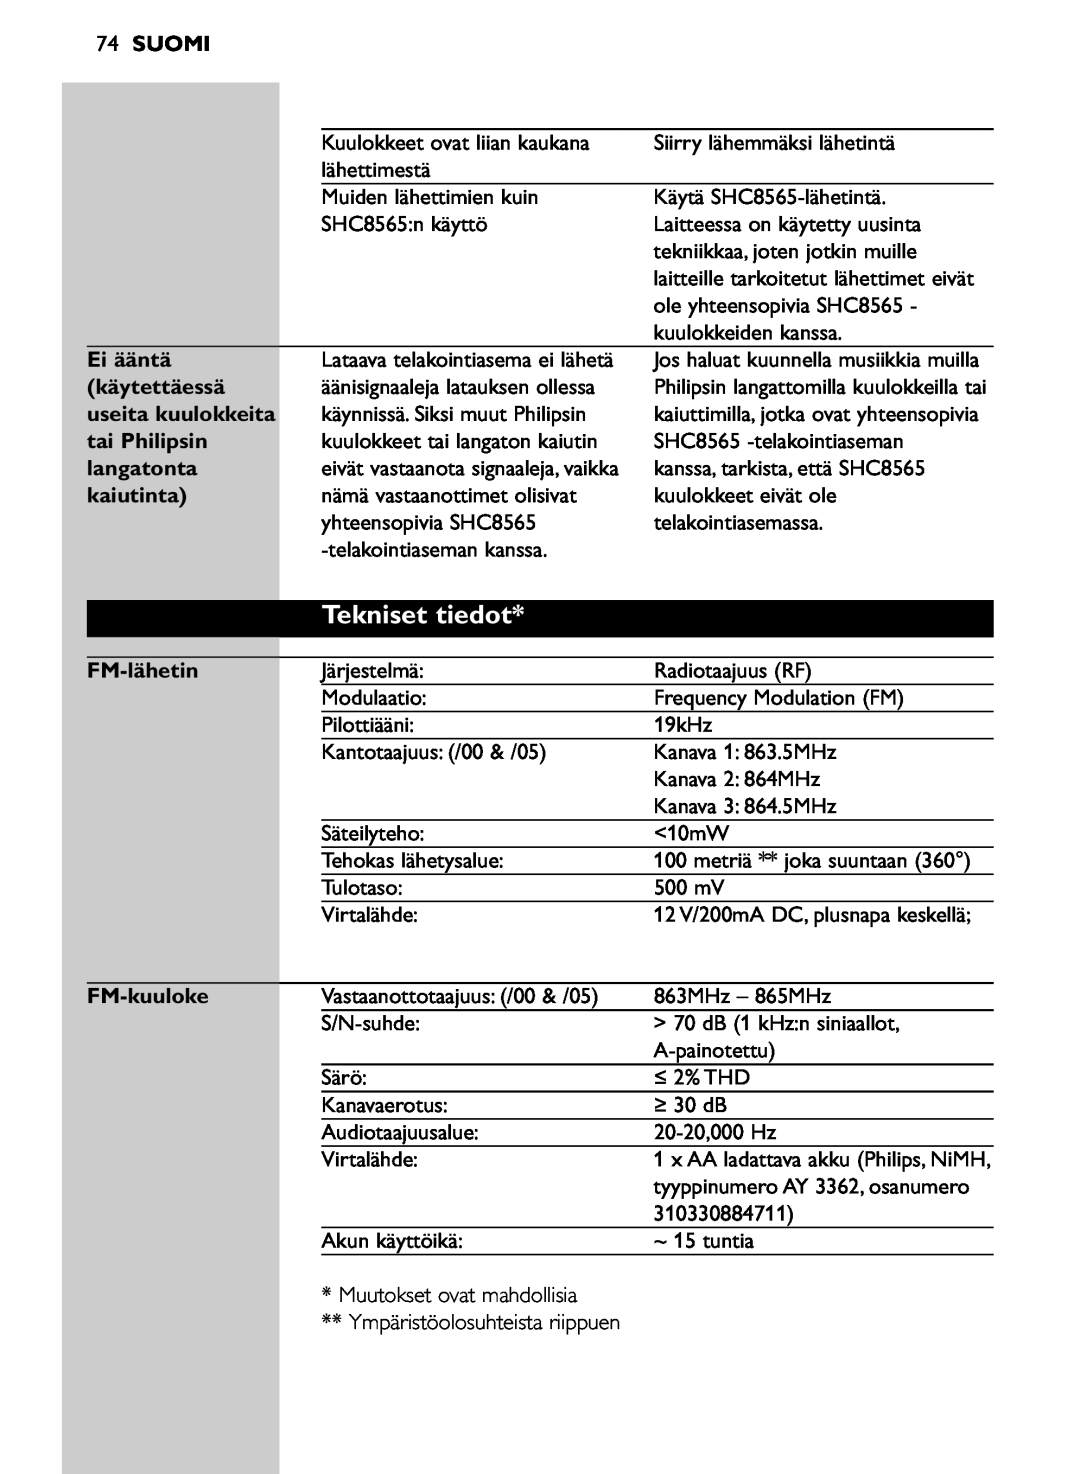 Philips SHC8565/00 manual Tekniset tiedot, Suomi, Ei ääntä, käytettäessä, tai Philipsin, langatonta, kaiutinta, FM-lähetin 